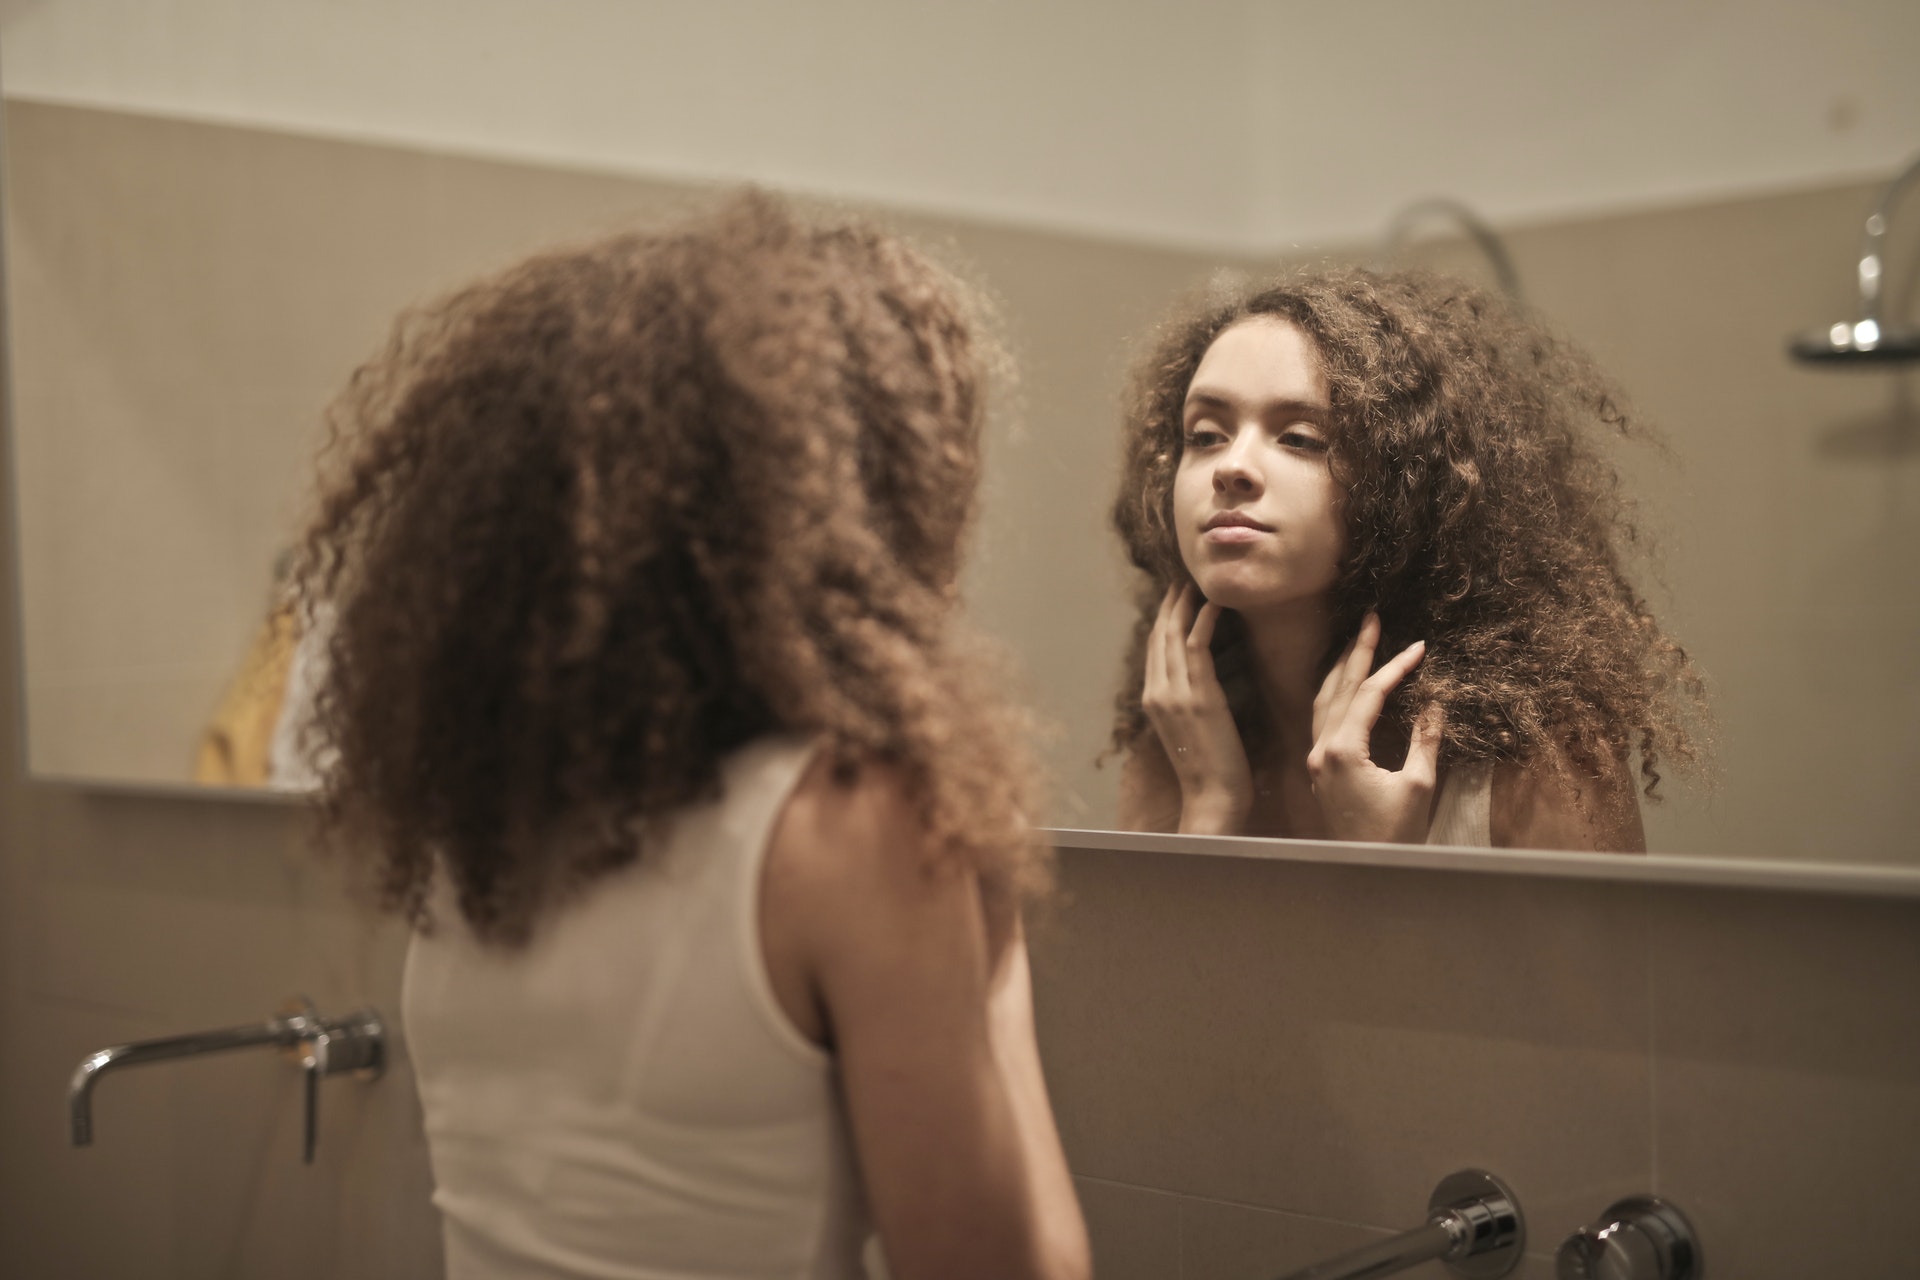 Self-Examination: How Do I Judge Myself?